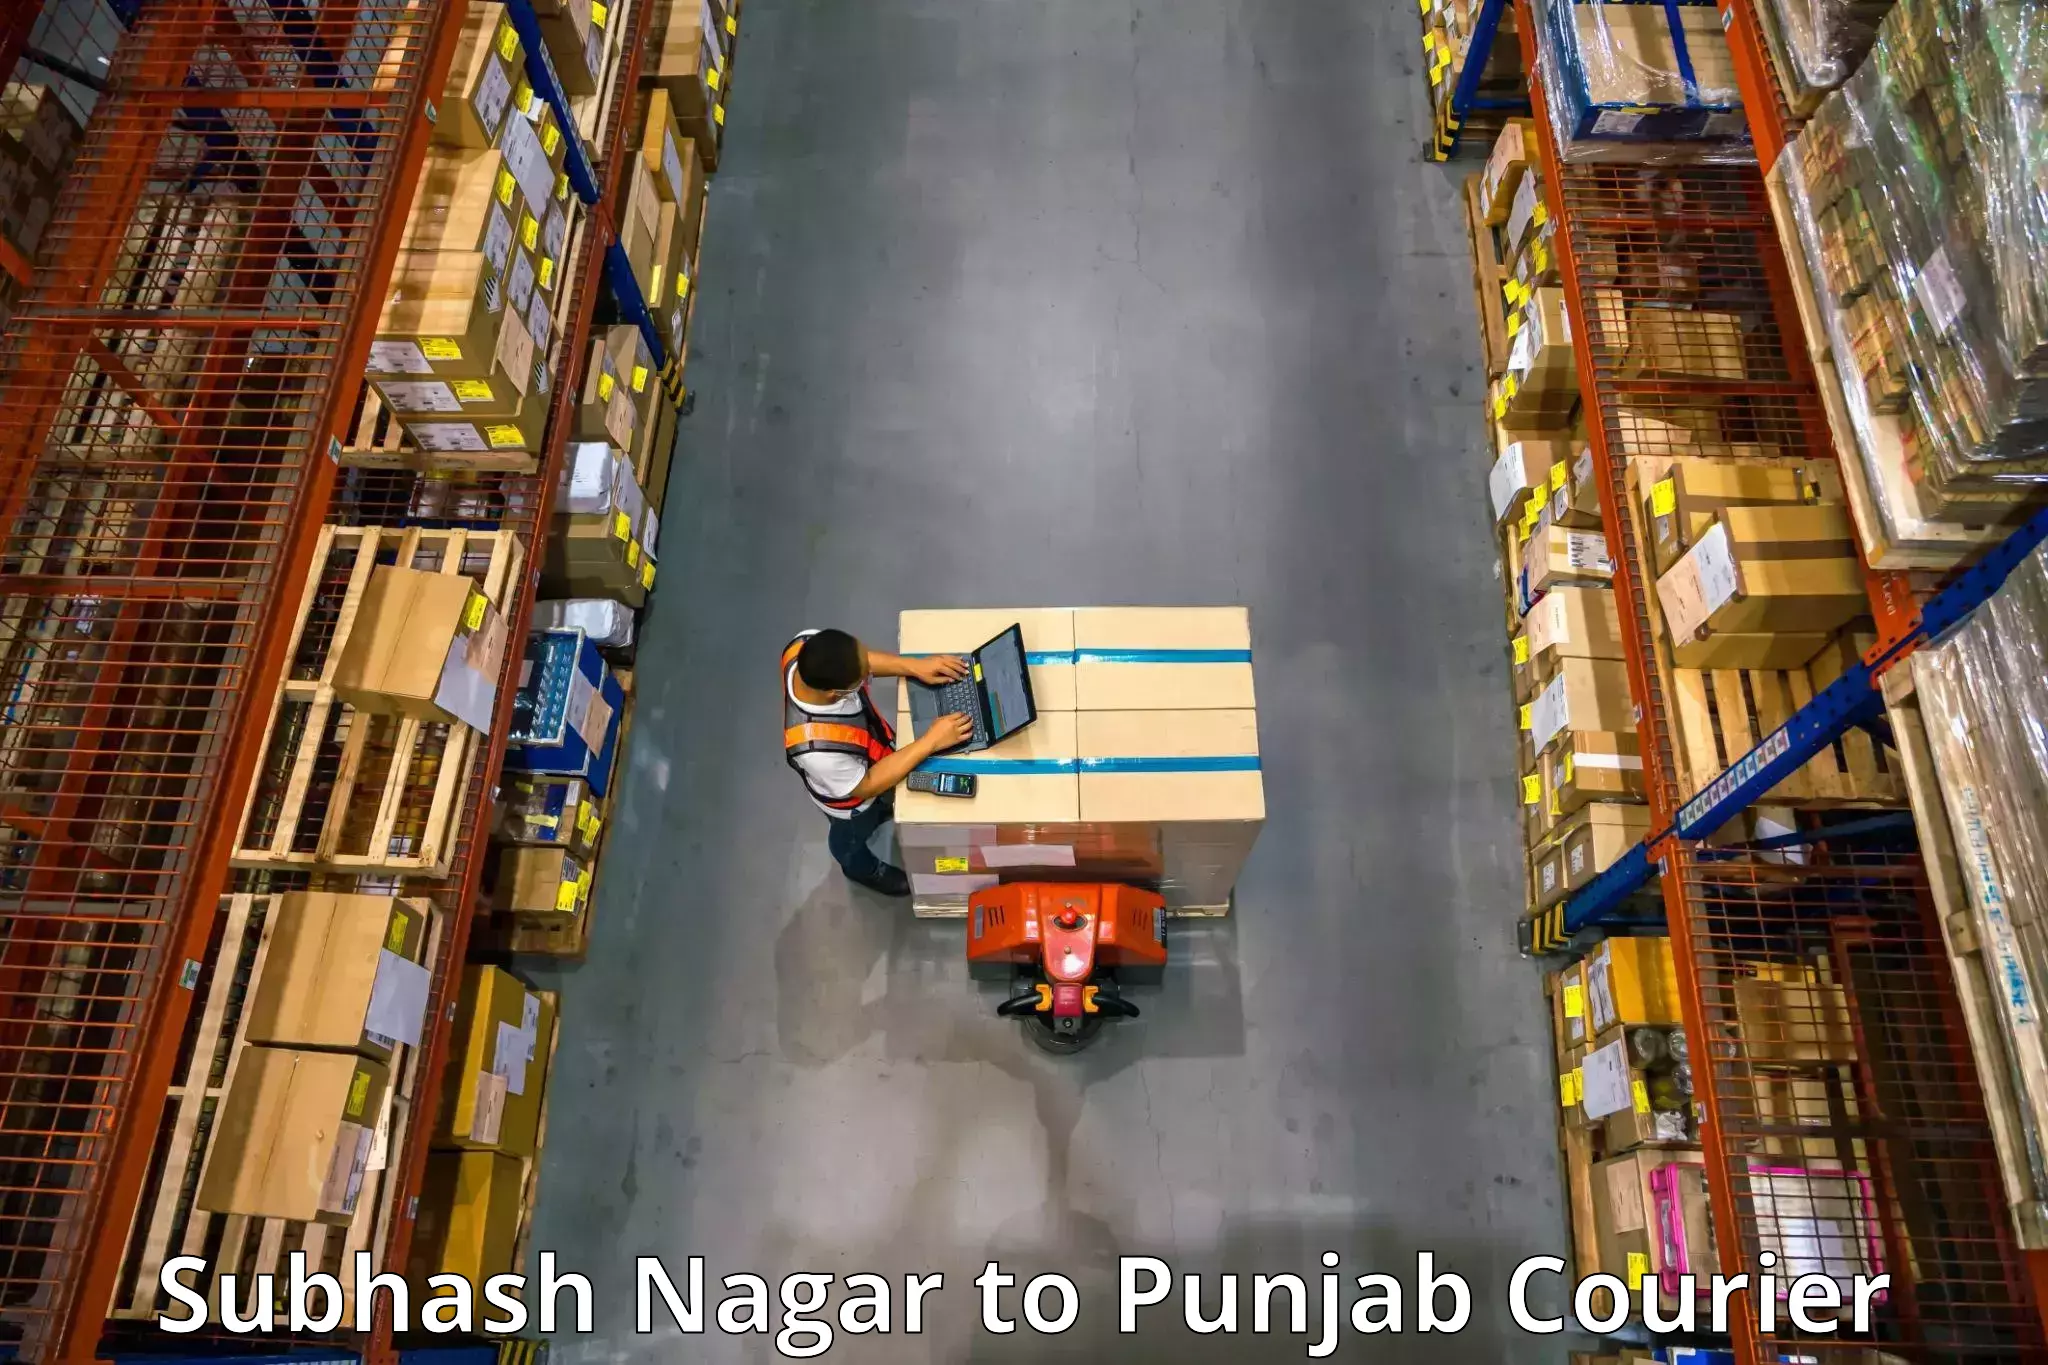 Professional packing services Subhash Nagar to Punjab